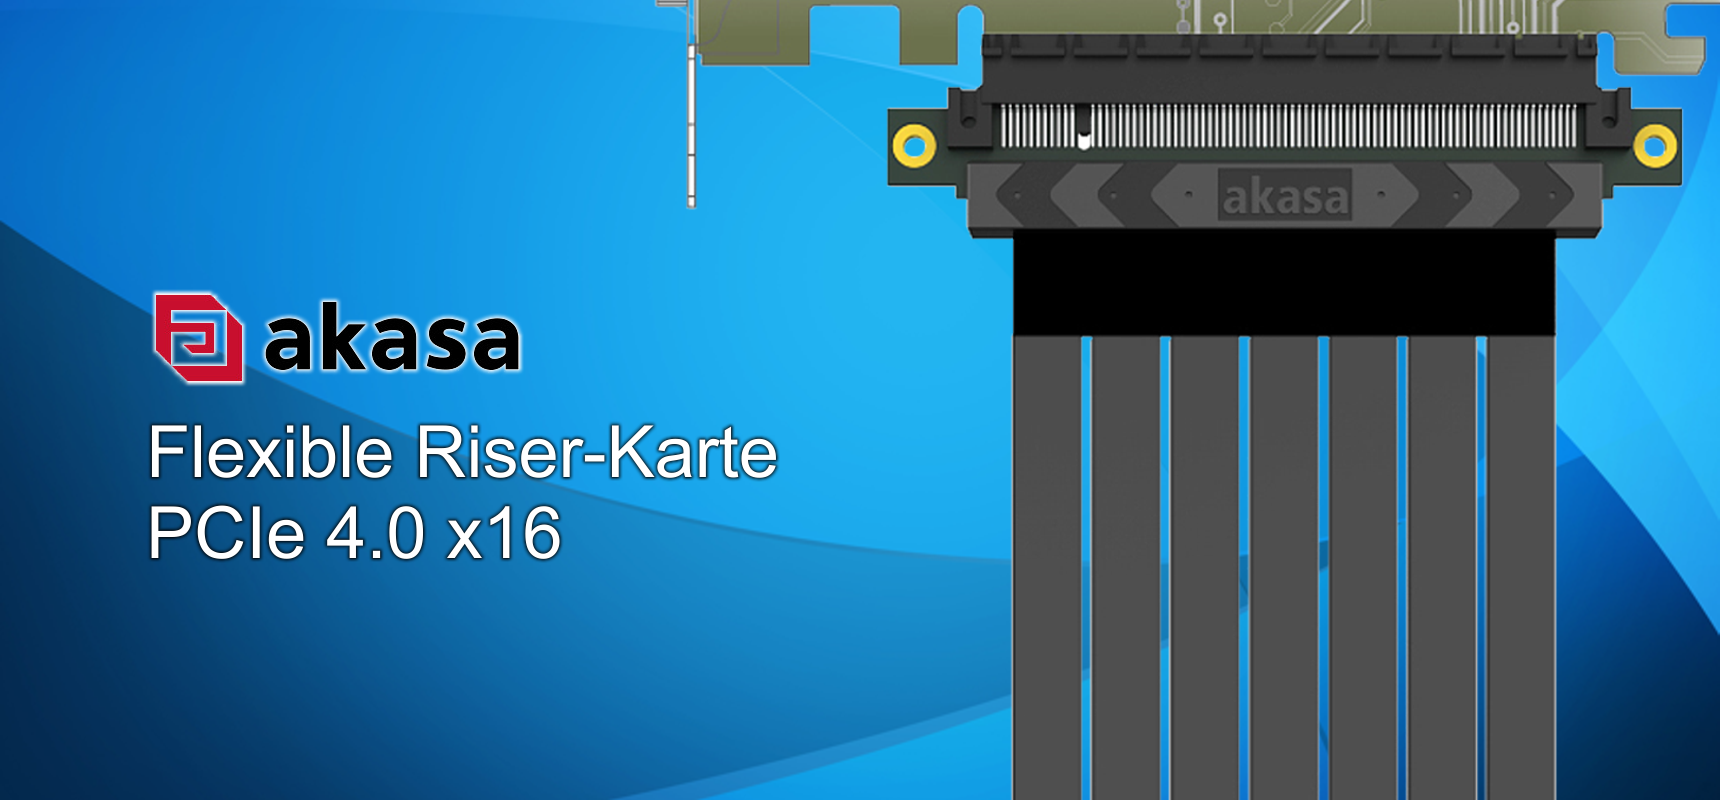 Flexible Riser-Karte mit PCIe 4.0 x16 Unterstützung von akasa